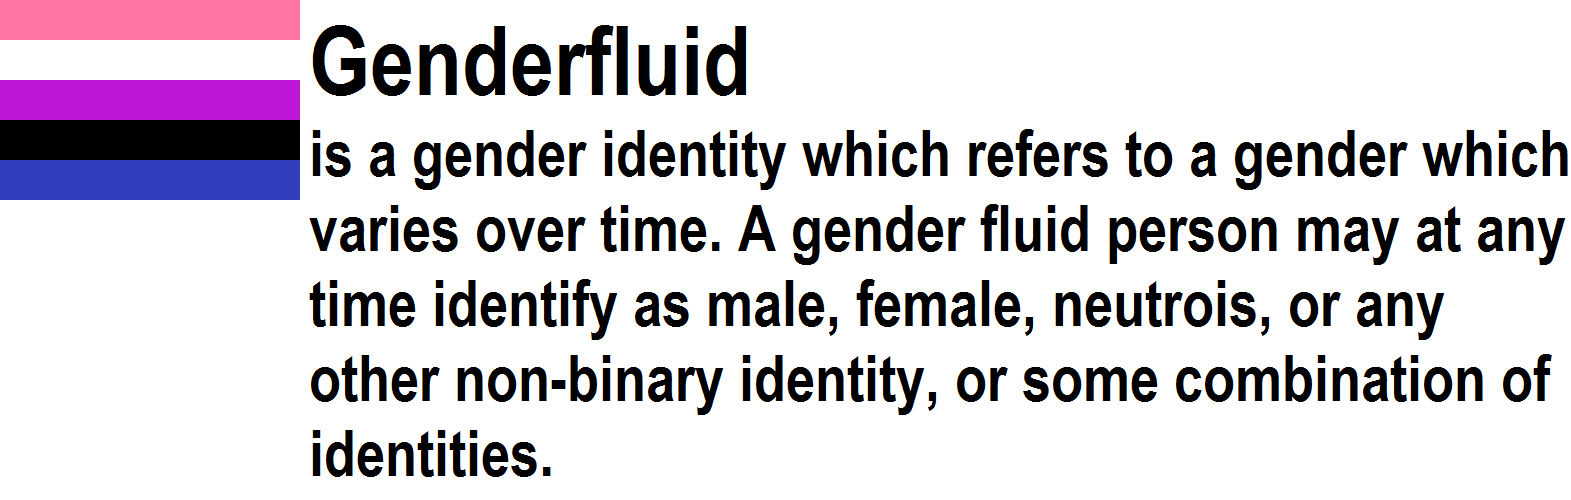 Genderfluid by n0-username on DeviantArt